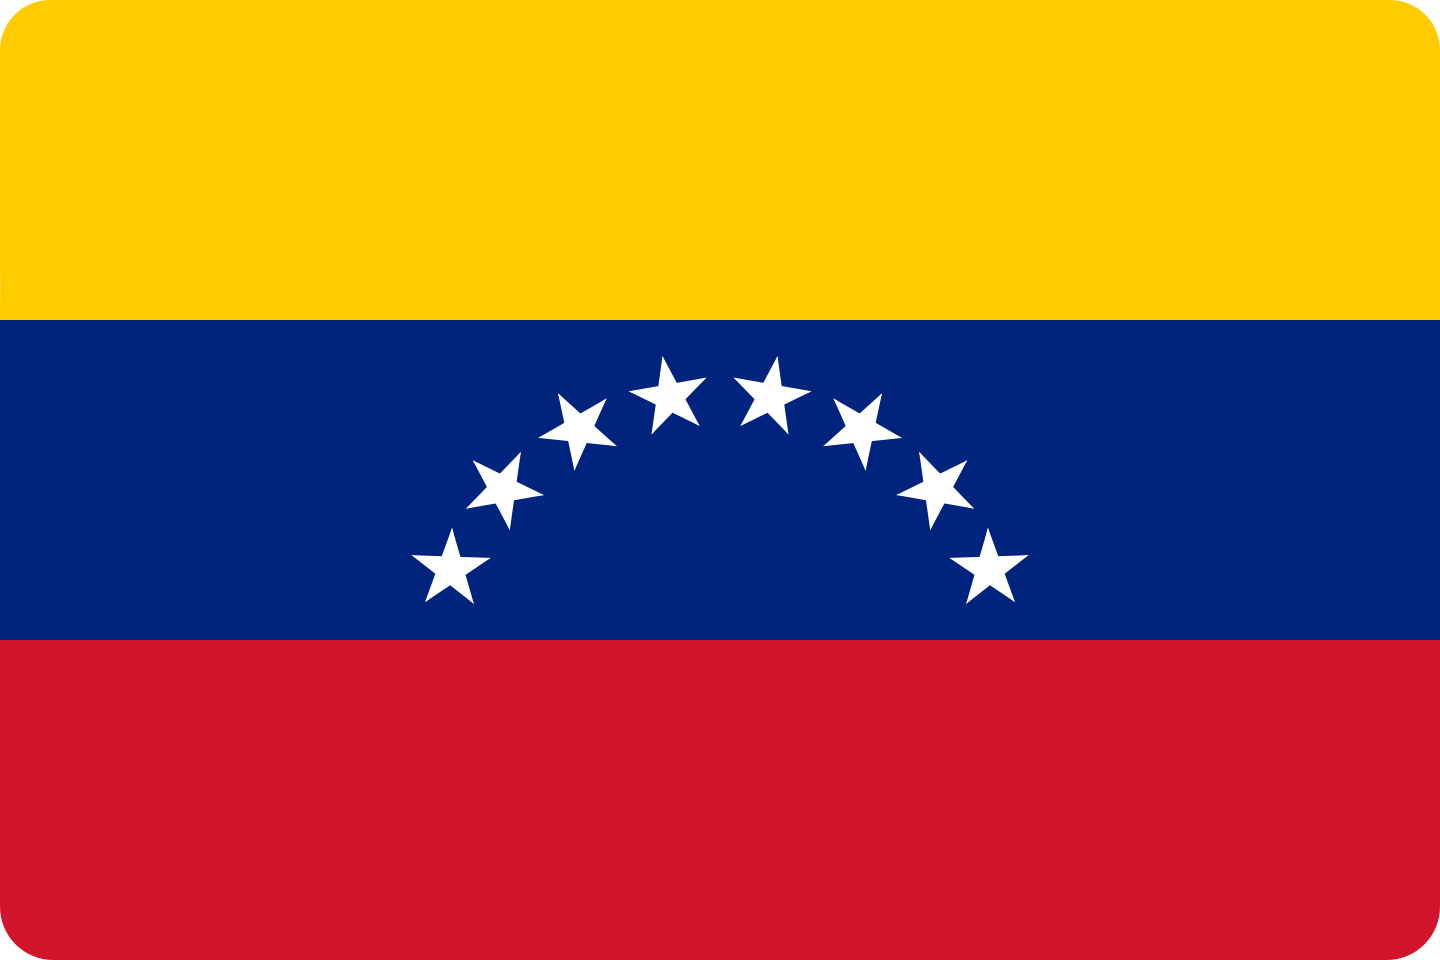 bandeira venezuela flag 2 - Flag of Venezuela